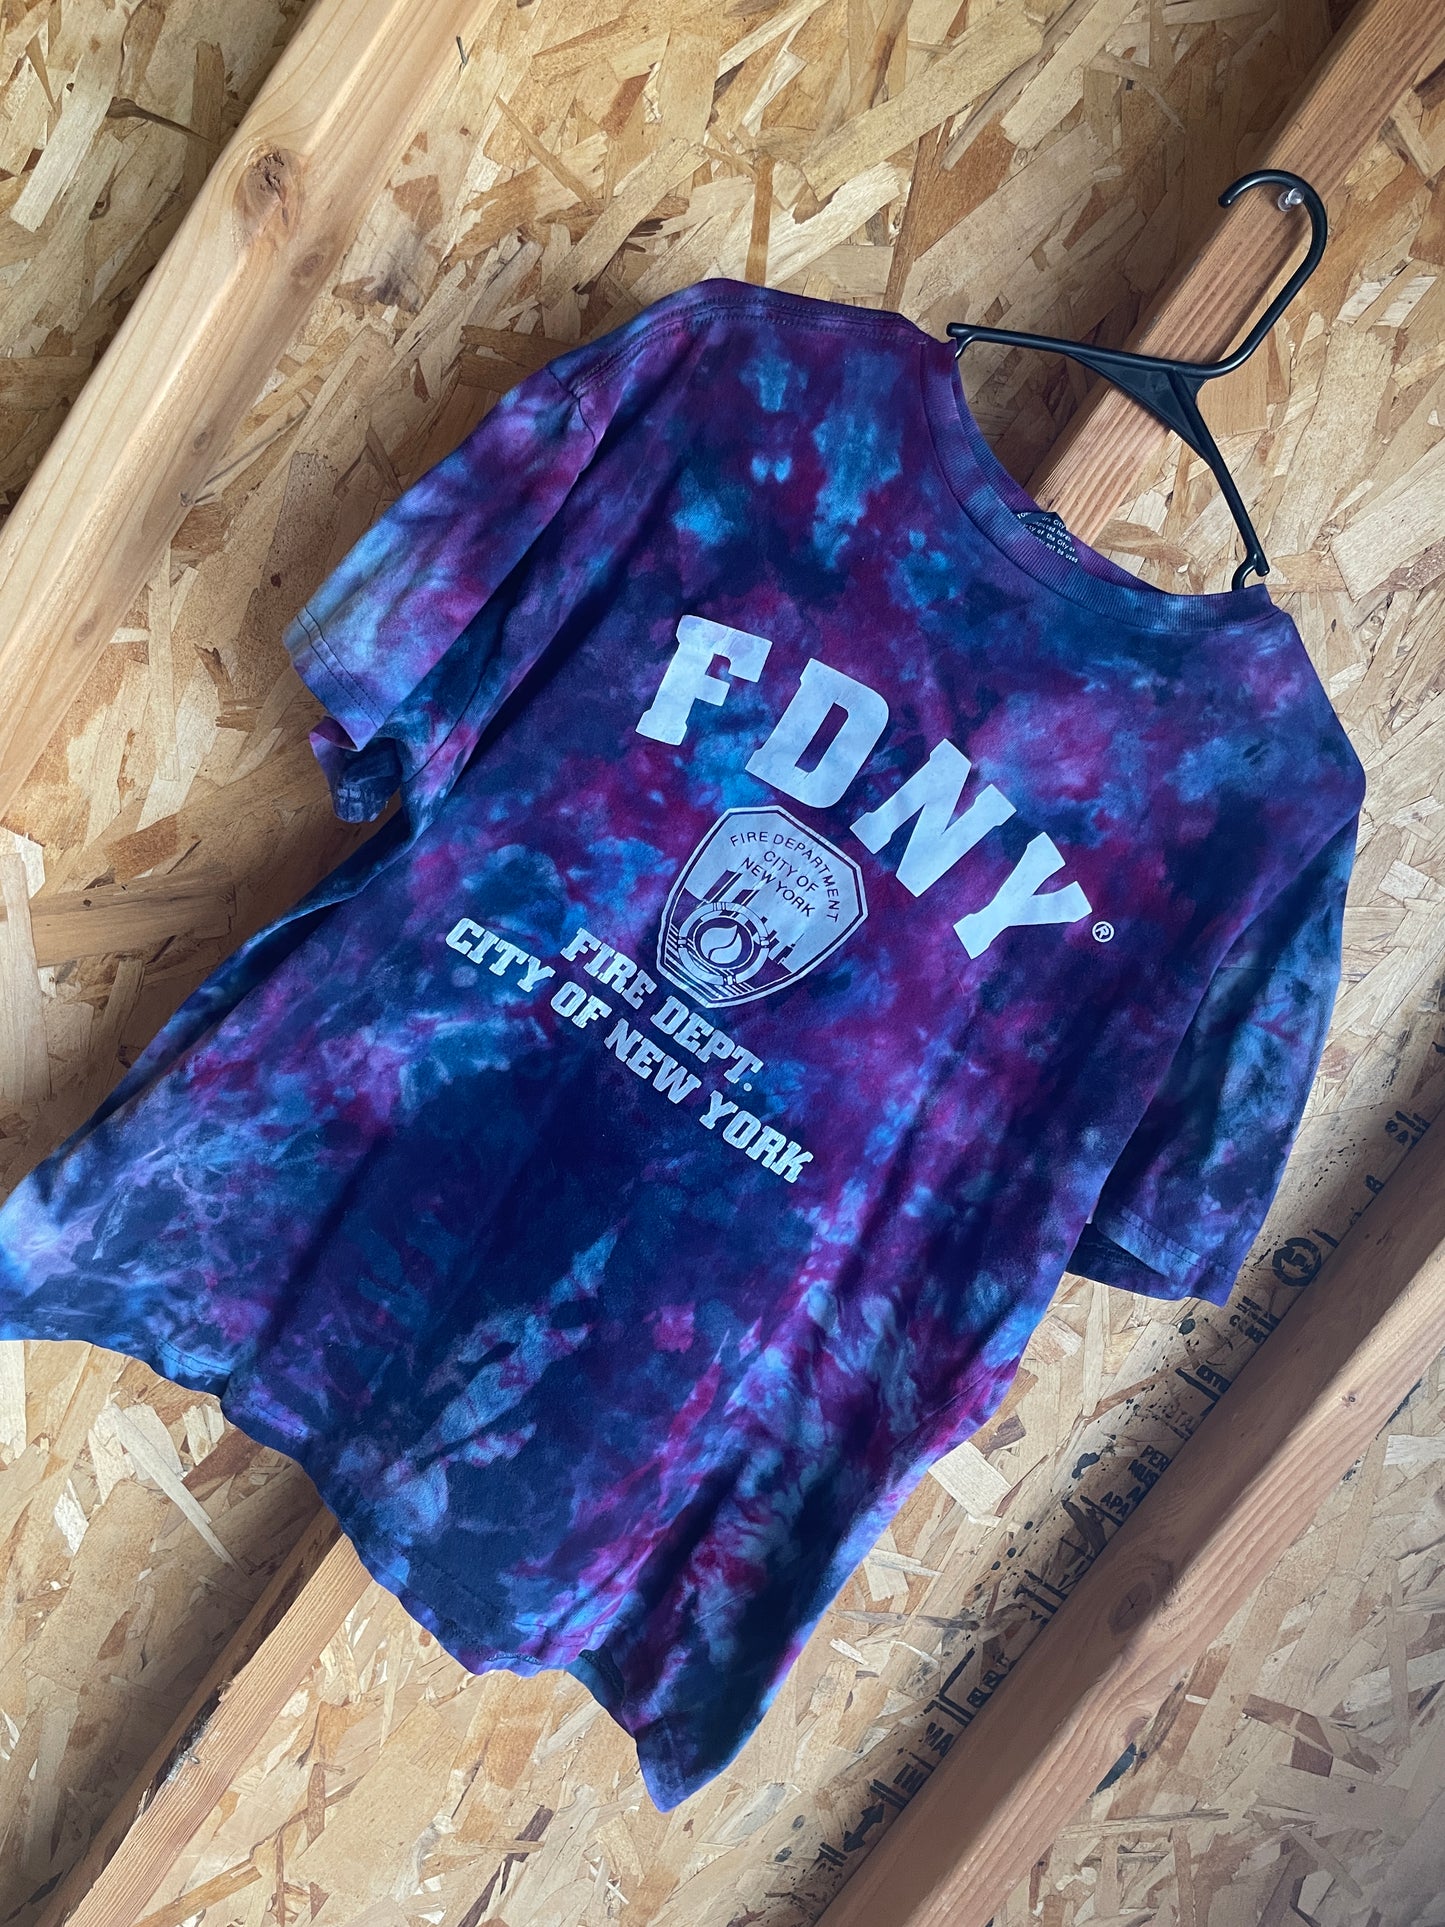 Large Men’s FDNY Handmade Tie Dye T-Shirt | Blue and Purple Galaxy Ice Dye Tie Dye Short Sleeve